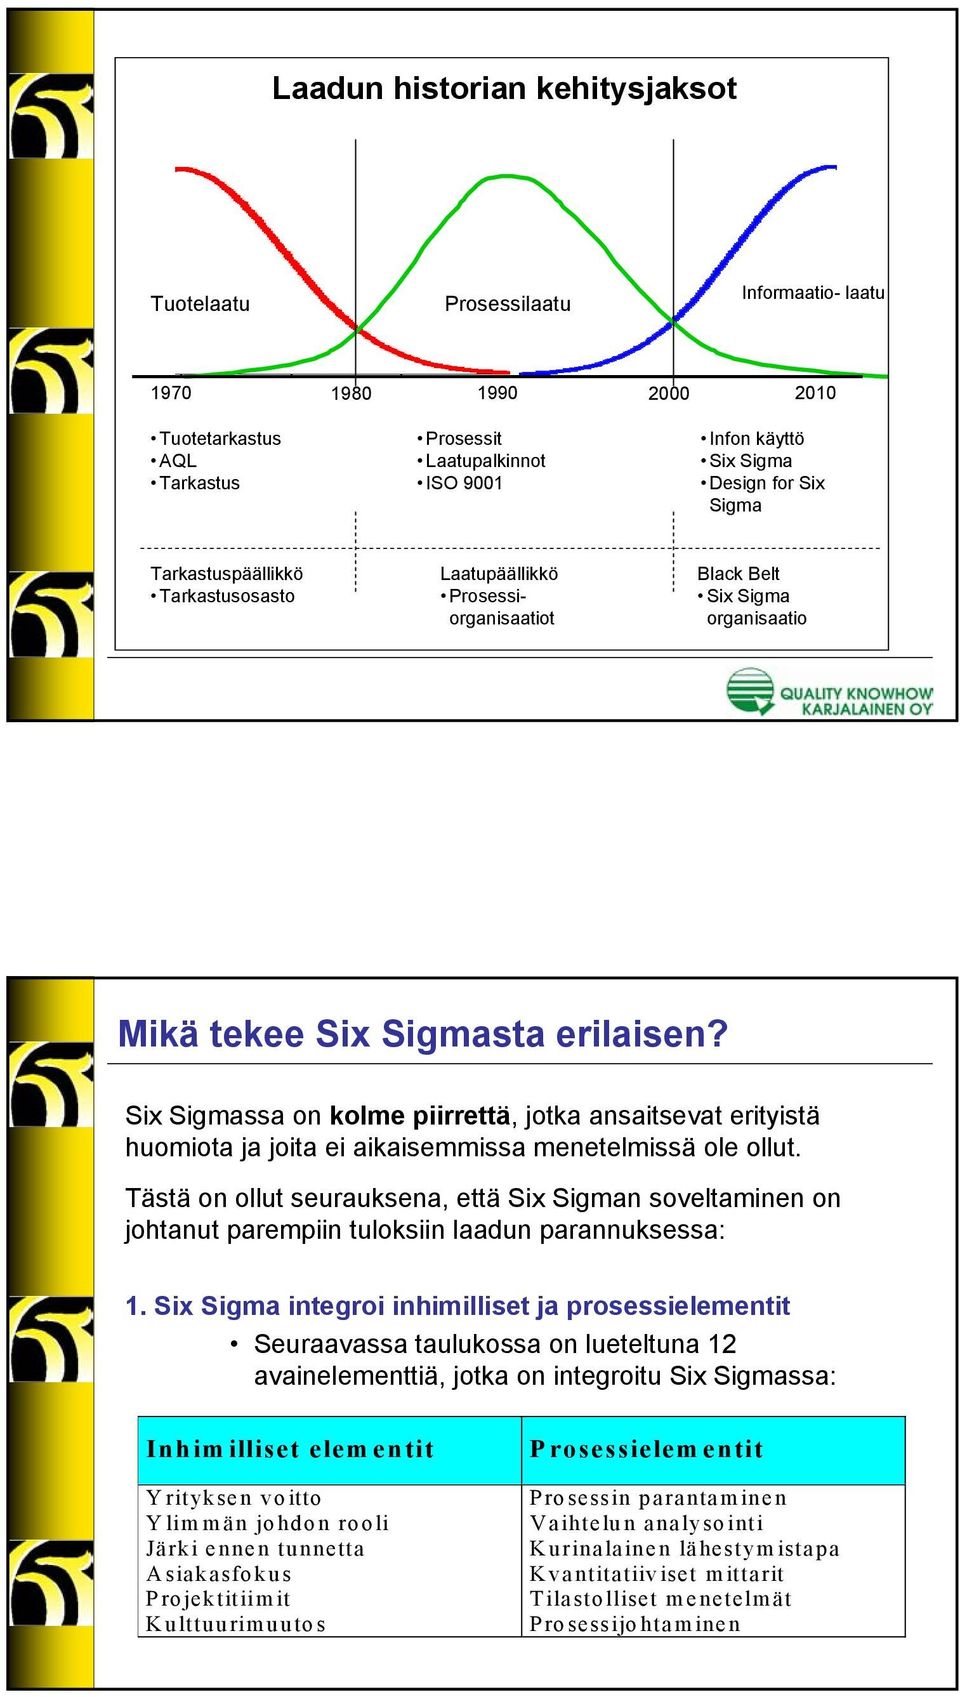 Six Sigmassa on kolme piirrettä, jotka ansaitsevat erityistä huomiota ja joita ei aikaisemmissa menetelmissä ole ollut.